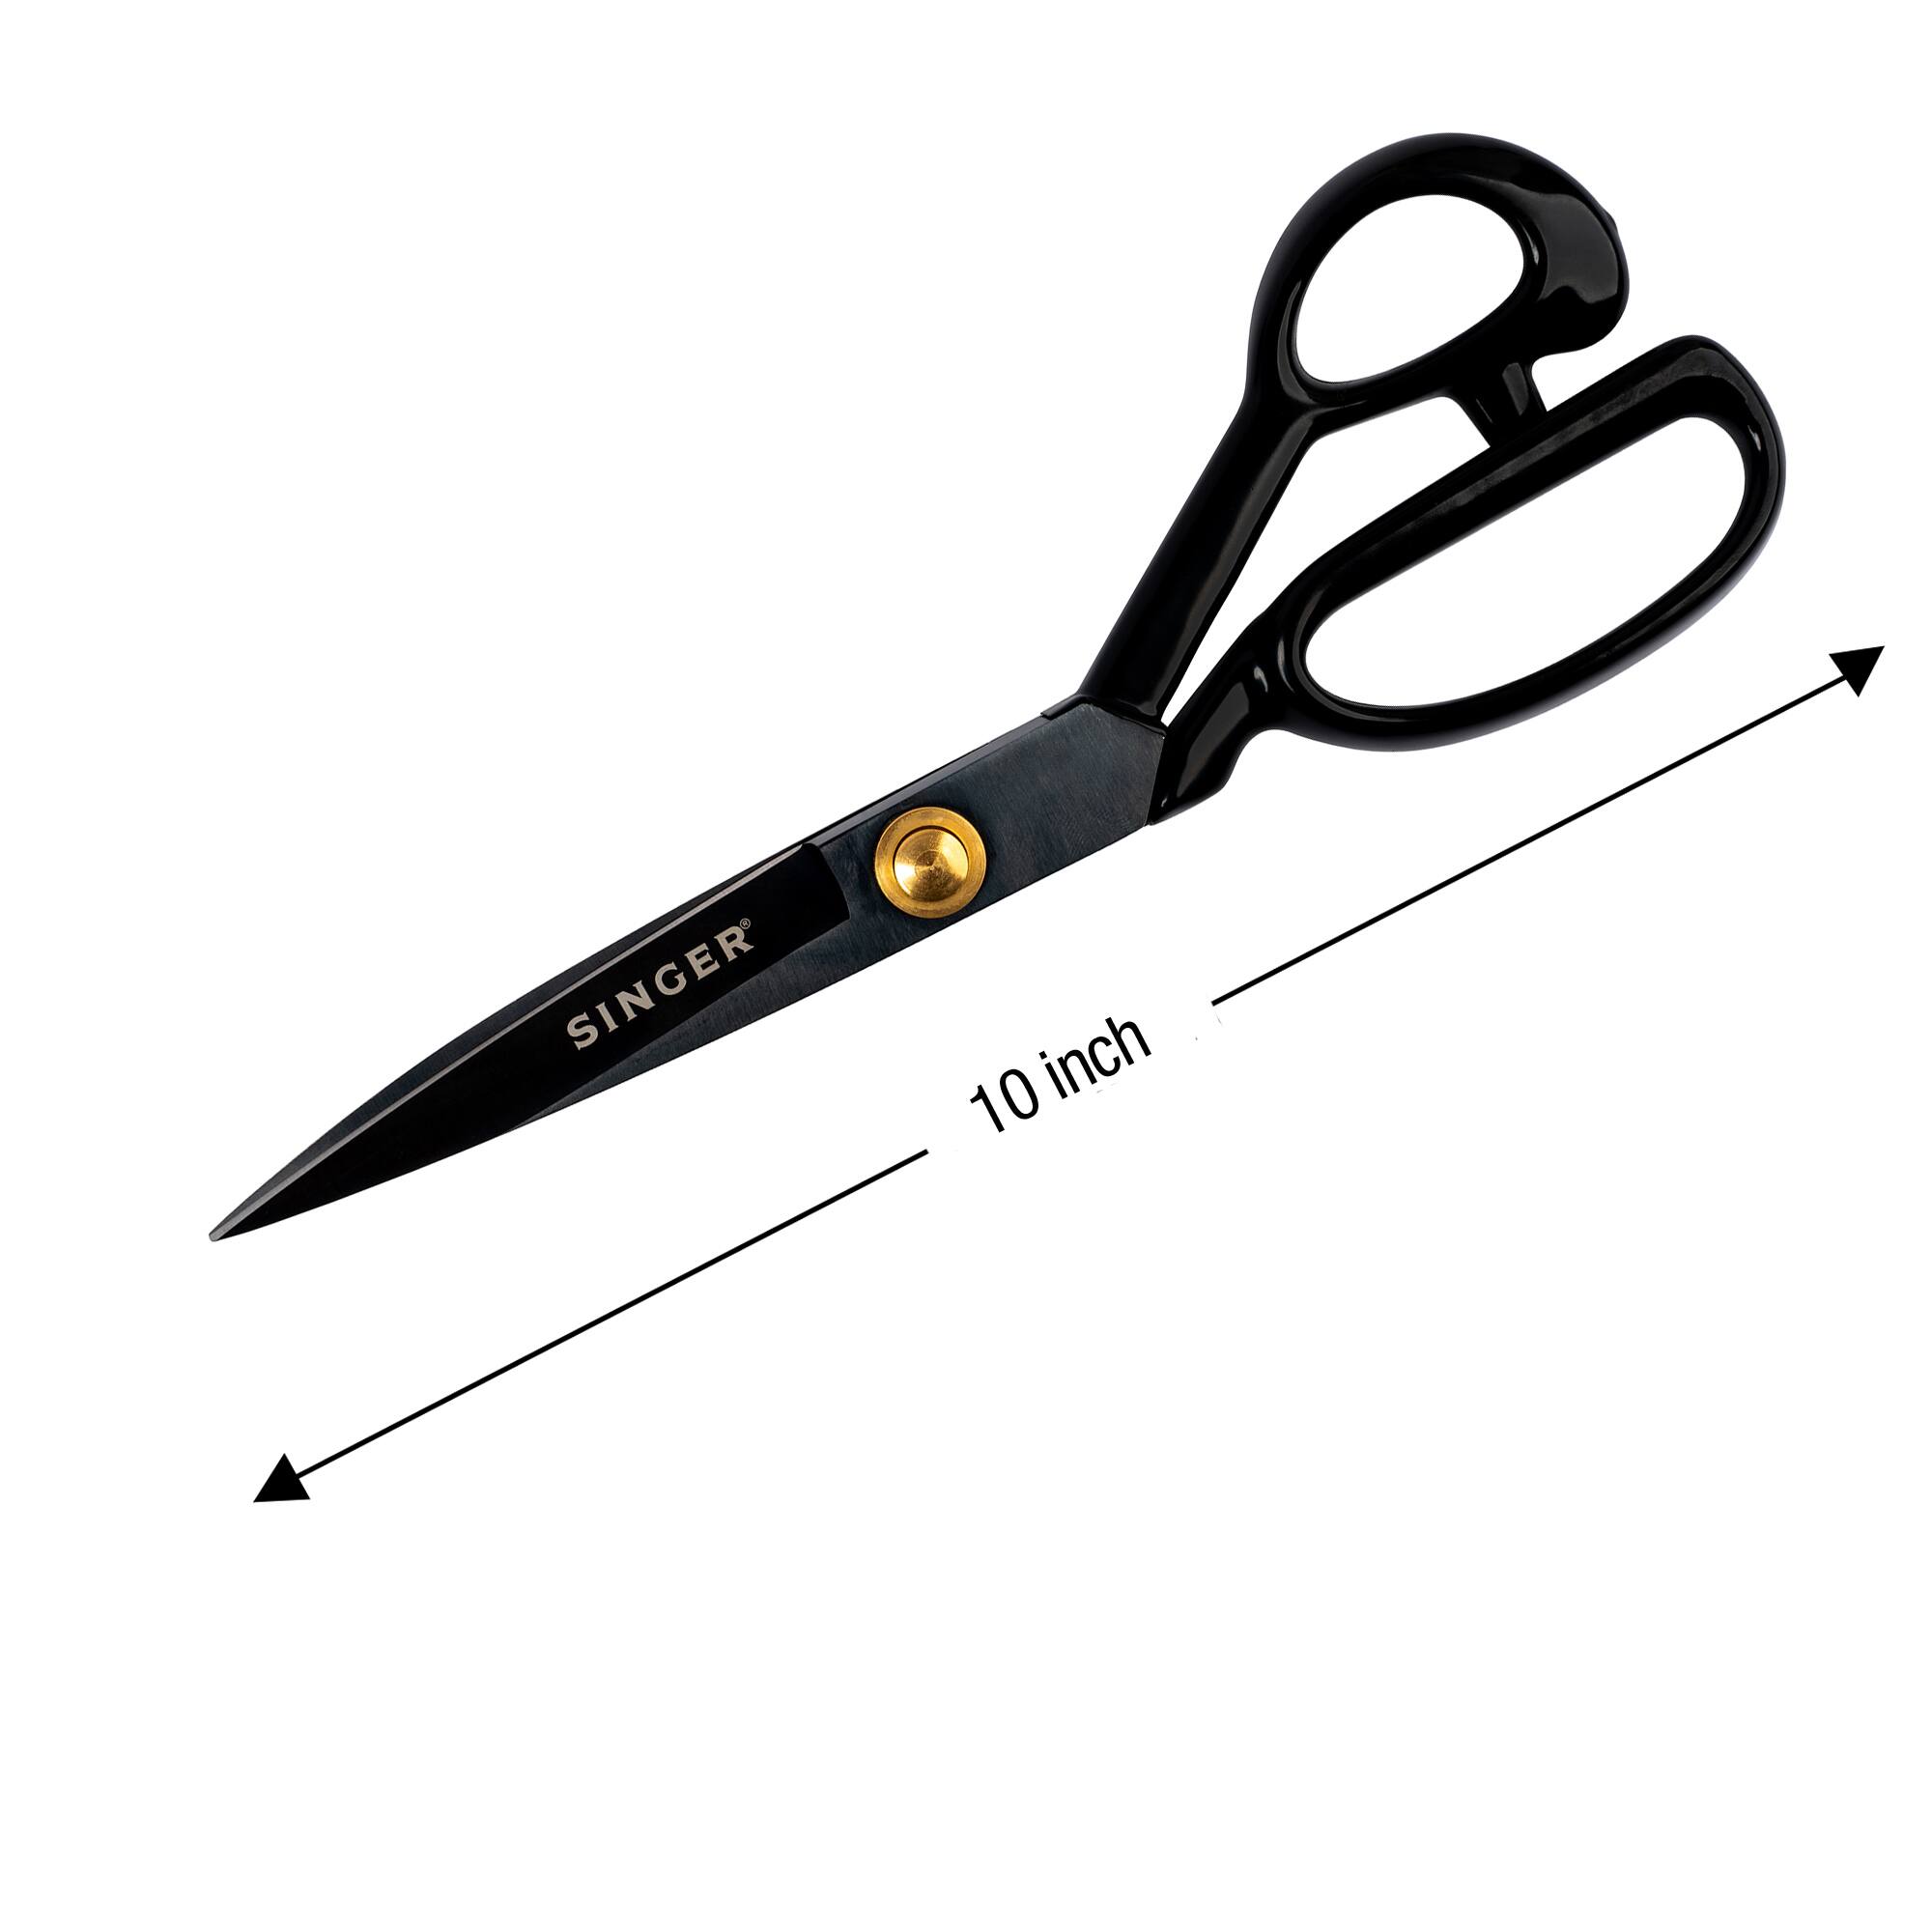 SINGER&#xAE; ProSeries Sewing Essentials Scissors Set